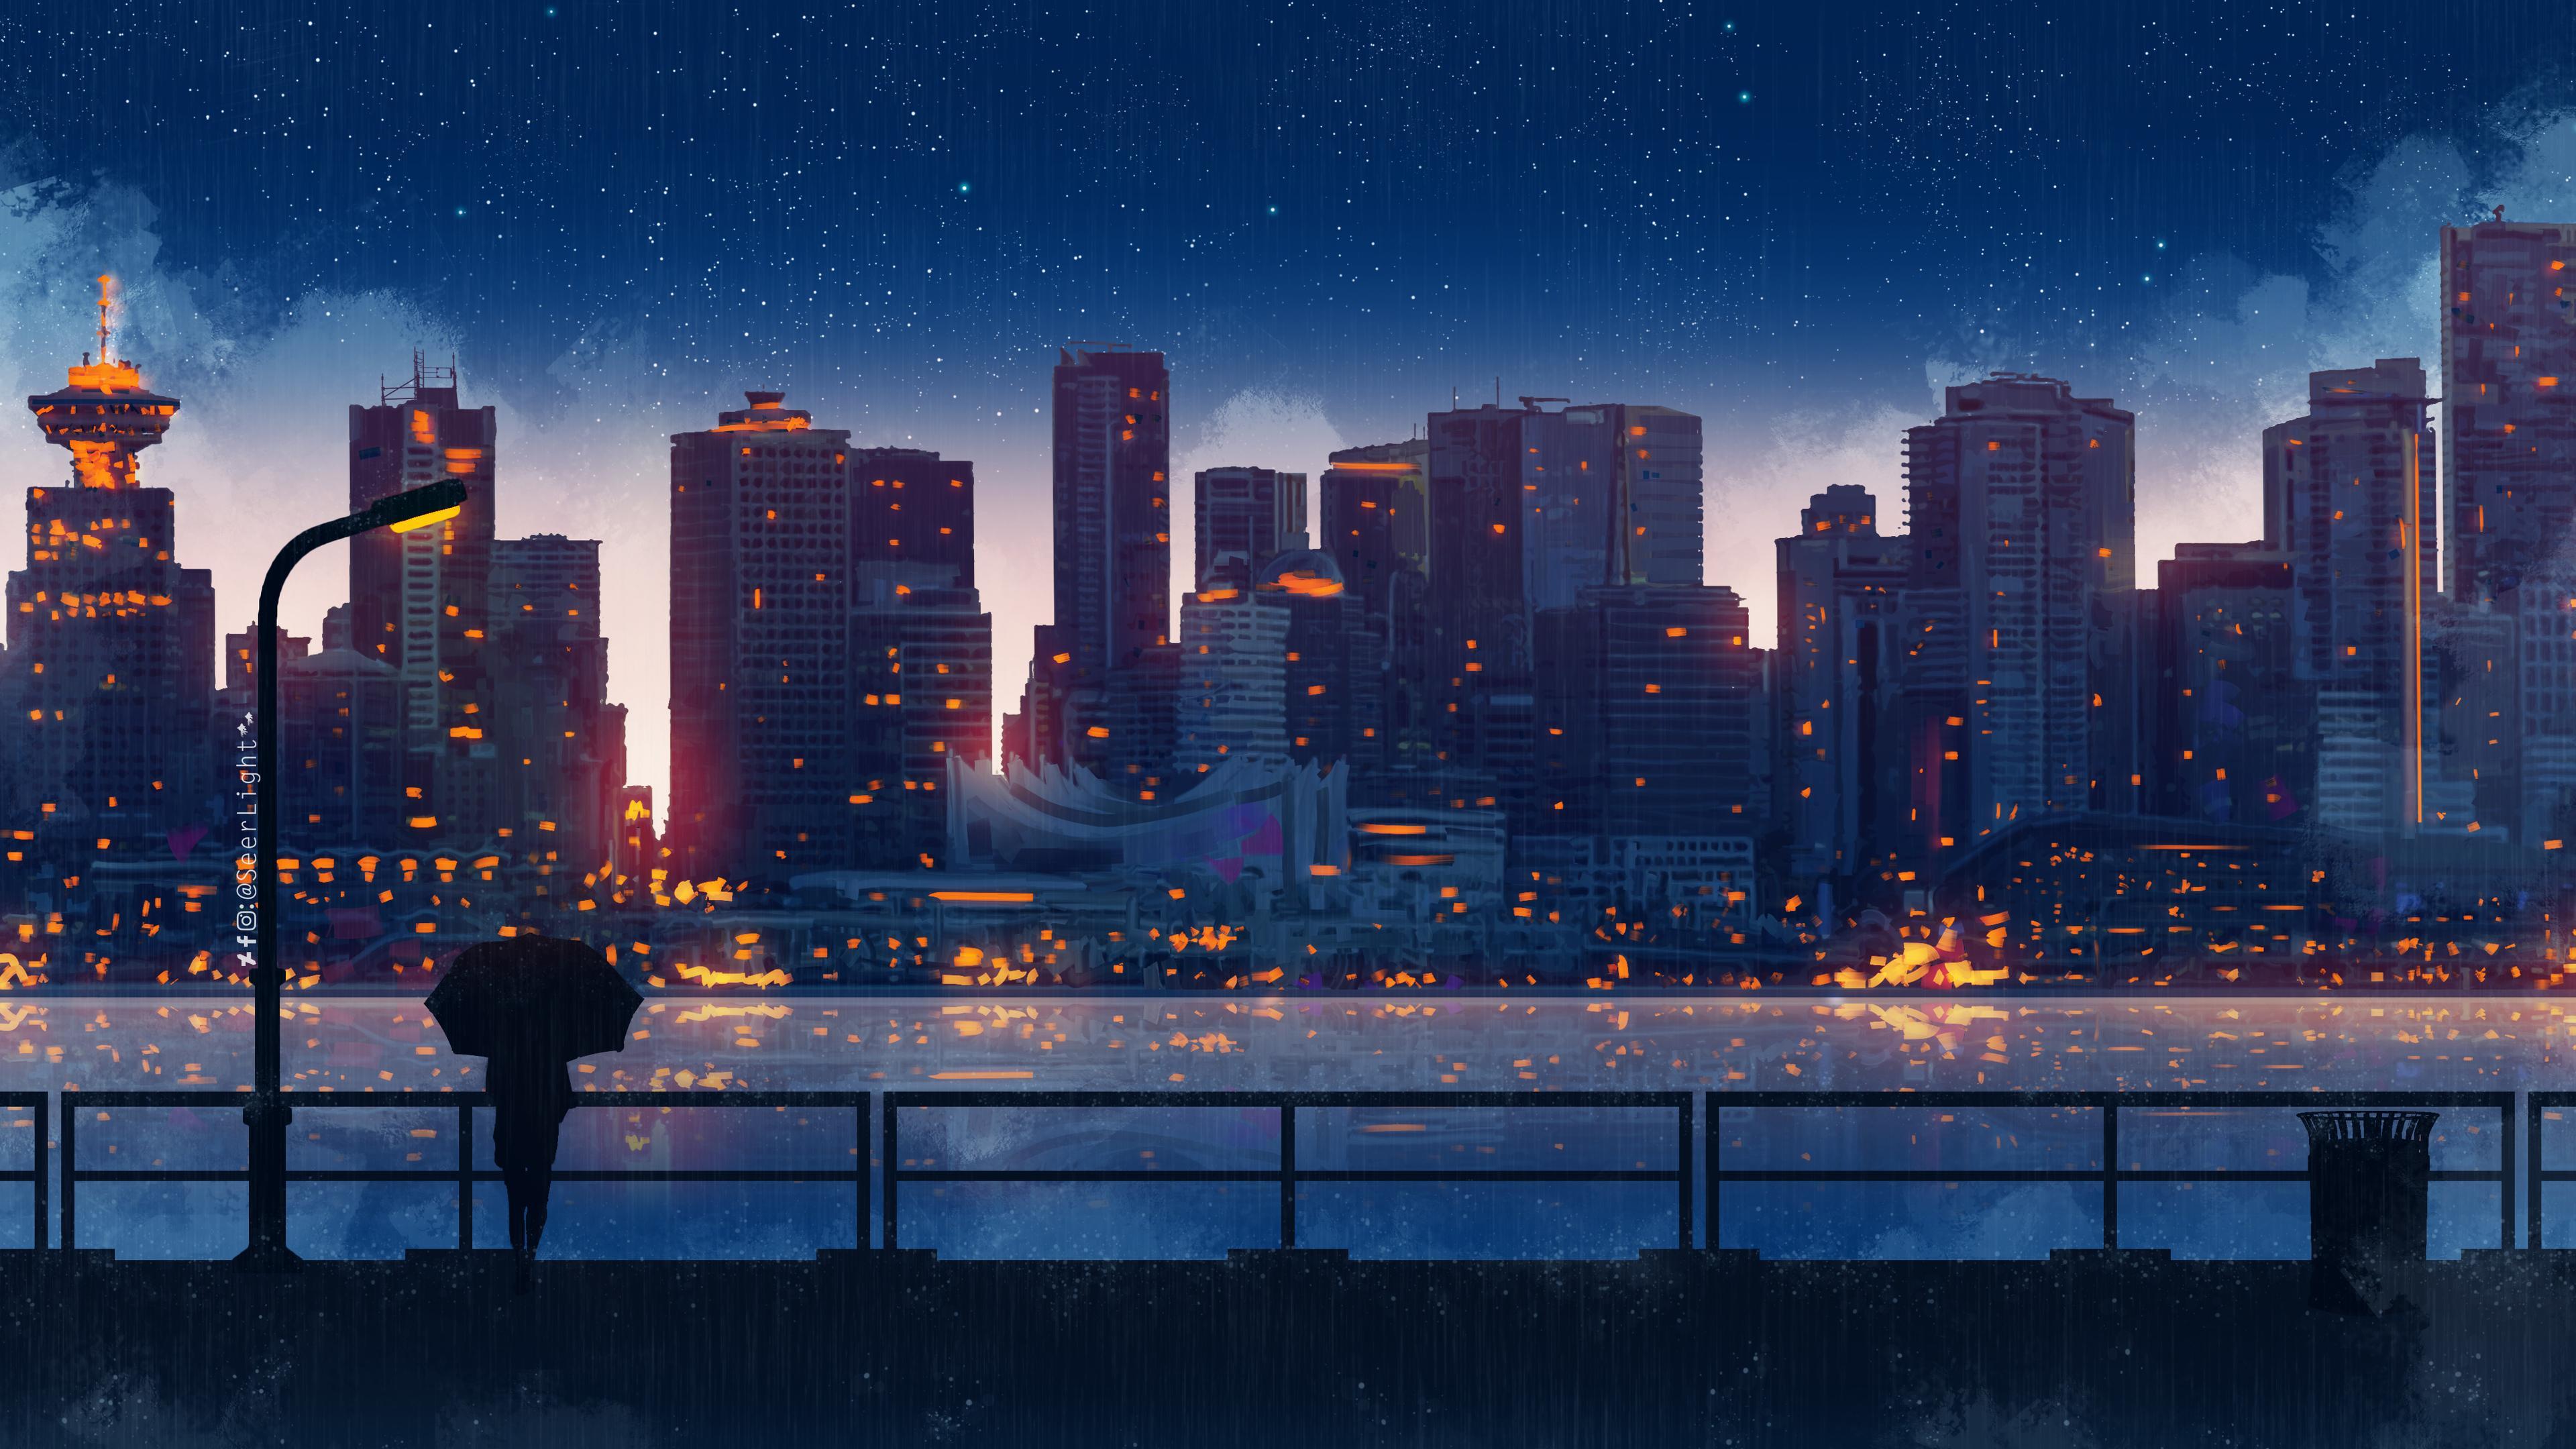 City Anime Wallpapers là một bộ sưu tập hình nền đỉnh cao cho những ai yêu thích anime và thành phố. Tất cả các hình nền đều được thiết kế đẹp mắt, tuyệt vời và ấn tượng. Hãy xem hình ảnh liên quan để tìm ra hình nền yêu thích của bạn nhé!